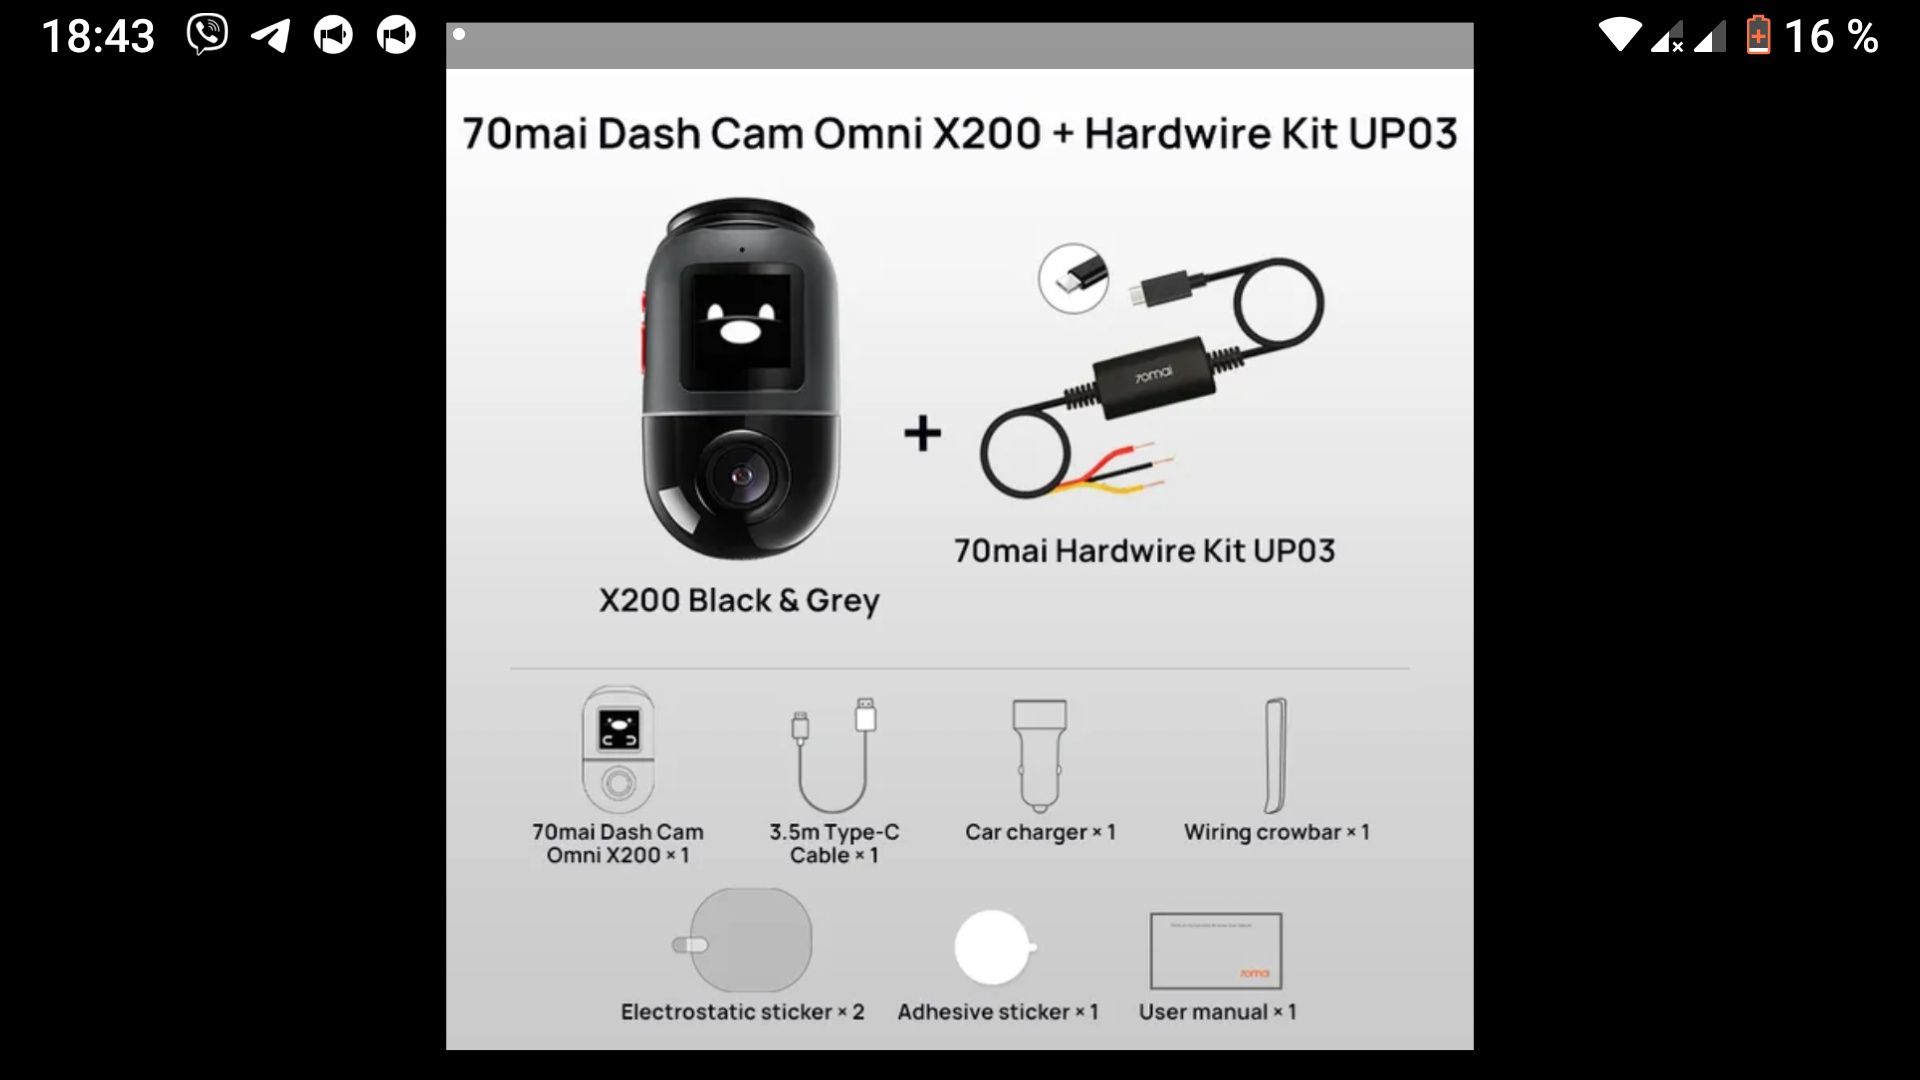 70mai Dash Cam Omni x 200 + Kit up03+4g LTE+Фильтр линза